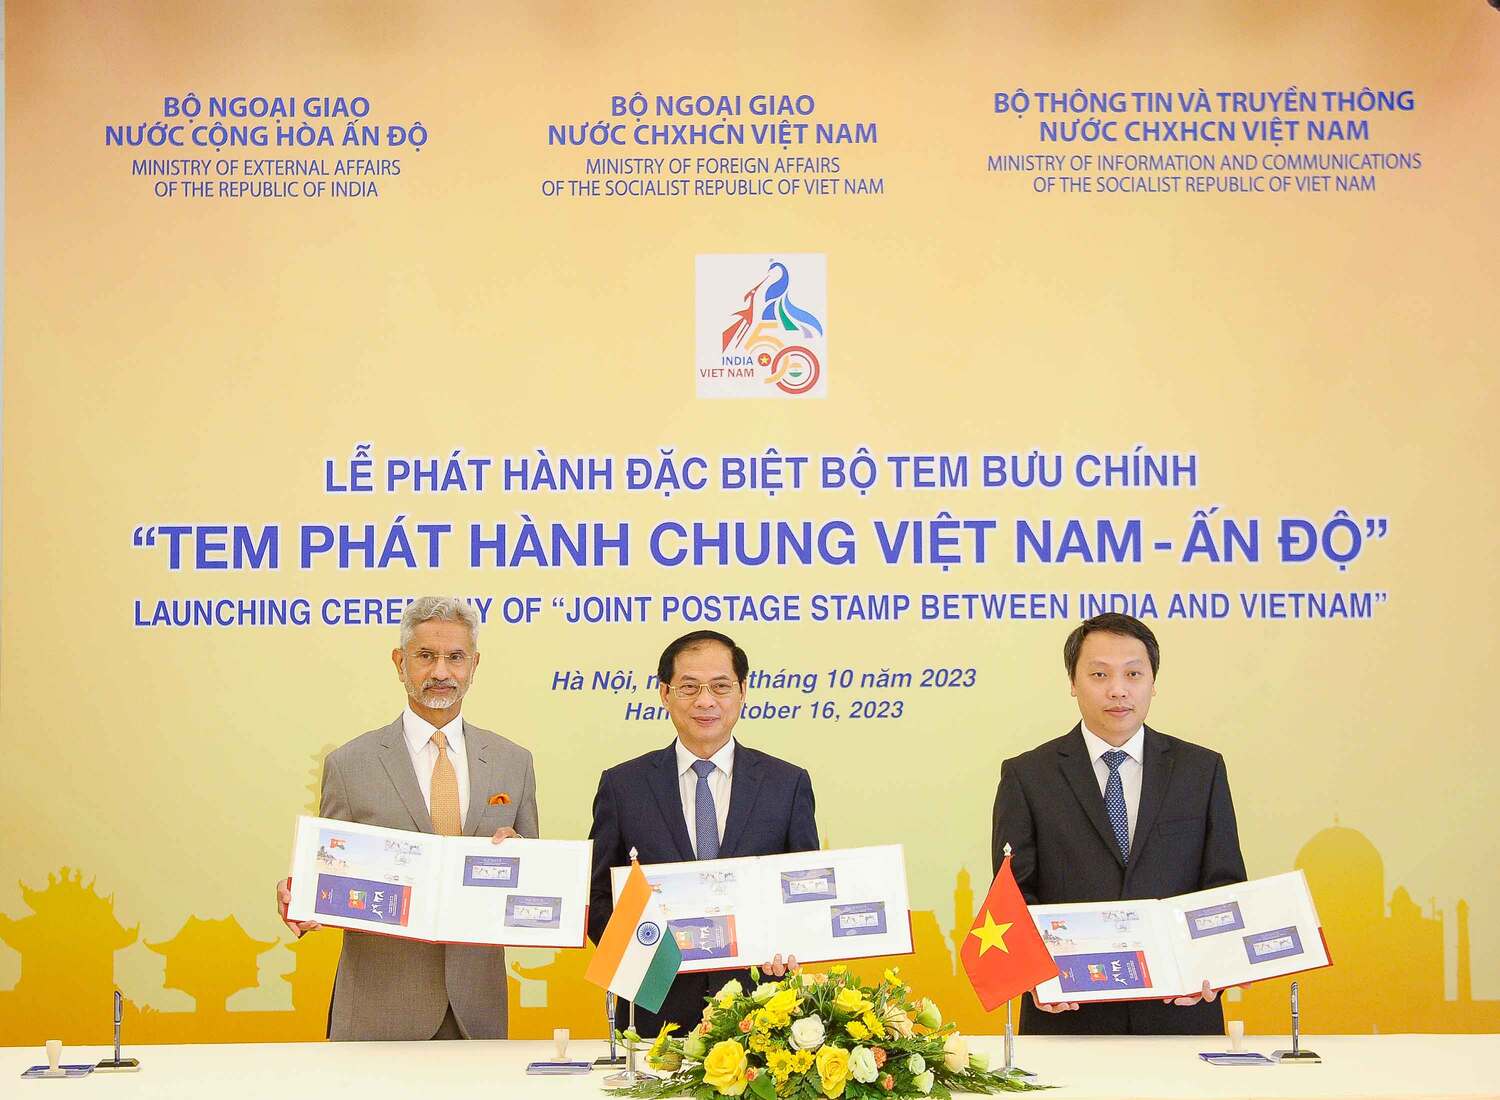 Sau lễ dù họp, 2 Bộ trưởng dự lễ phát hành bộ tem chung Việt Nam - Ấn Độ kỷ niệm 50 năm thiết lập quan hệ ngoại giao giữa hai nước (1972-2022). Ảnh: Bộ Ngoại giao